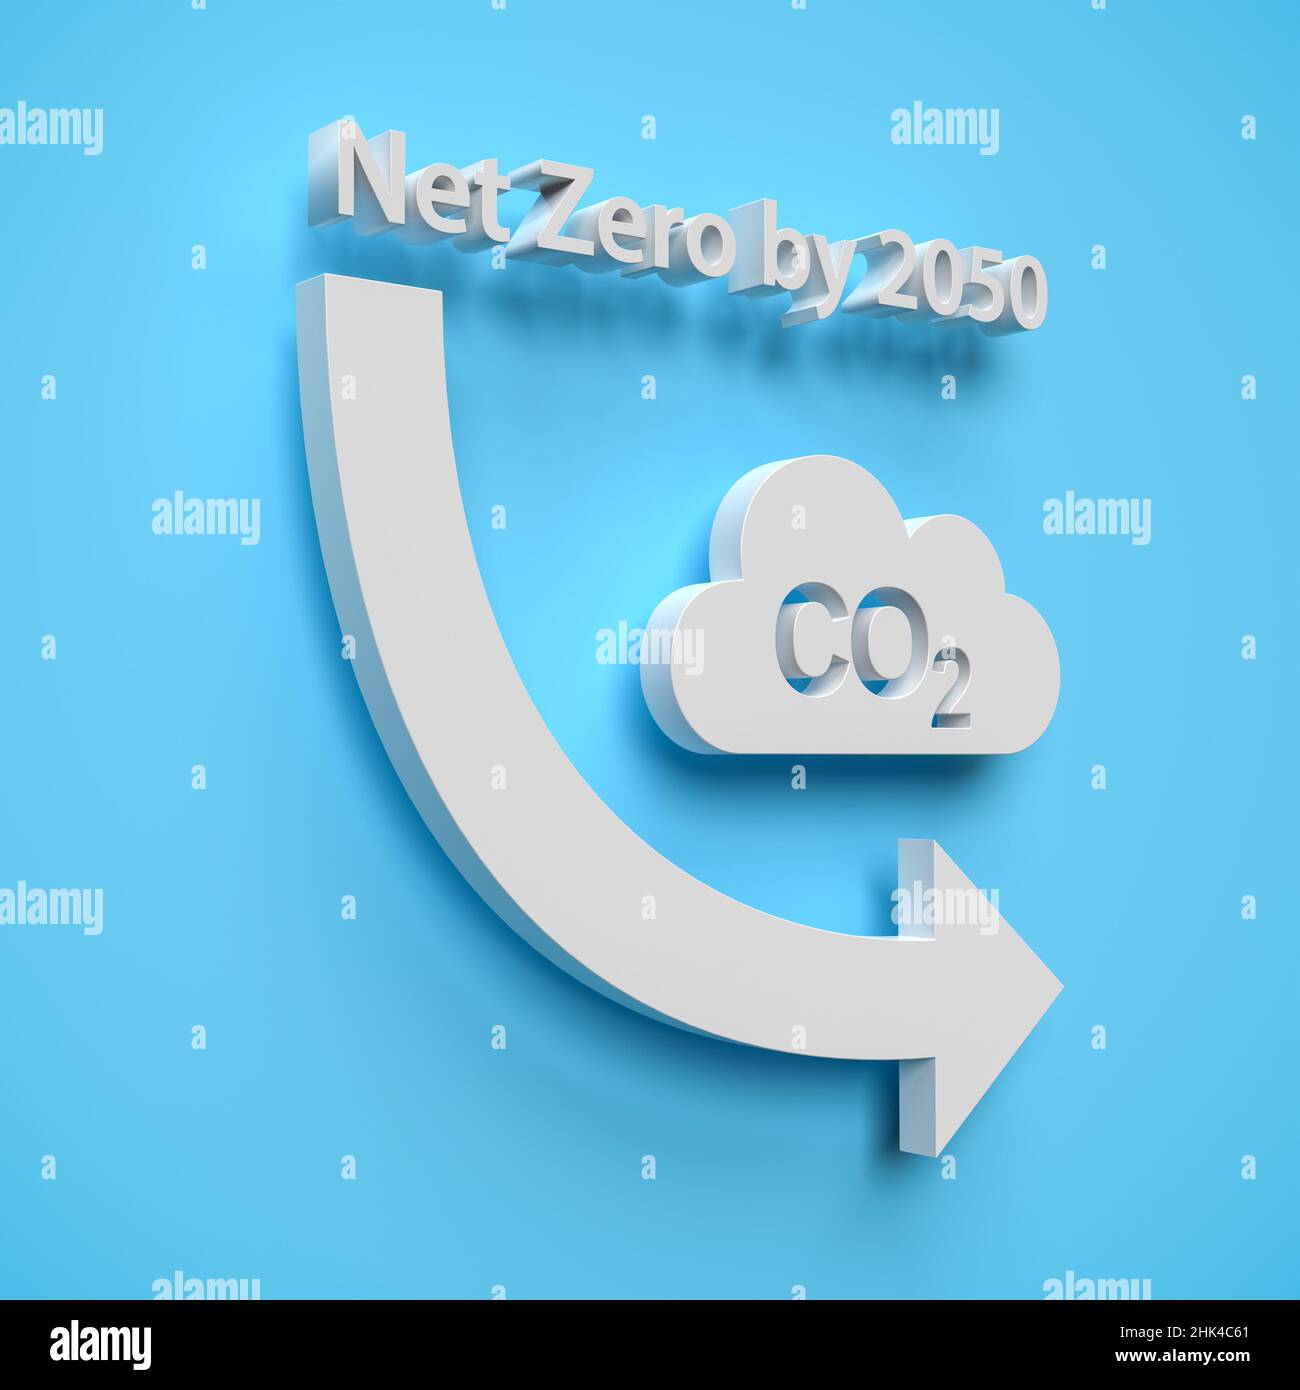 CO2 CONCEPTO DE REDUCCIÓN. Un objeto en forma de nube con la palabra CO2 perforada delante de un fondo azul. Una flecha curva que apunta hacia abajo y el texto 'N Foto de stock